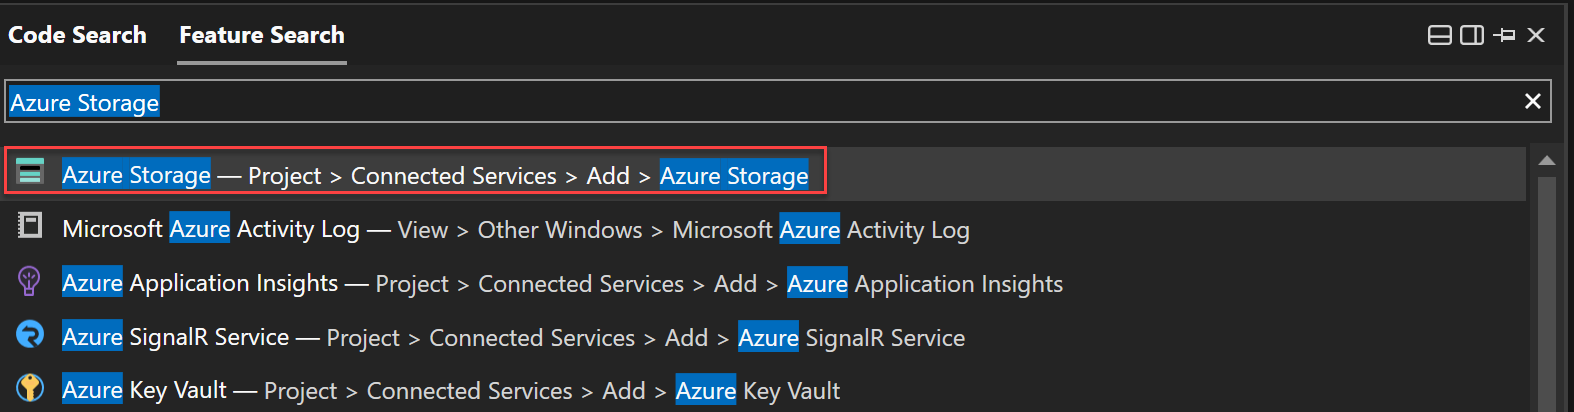 機能の検索を使った Azure Storage の検索のスクリーンショット。